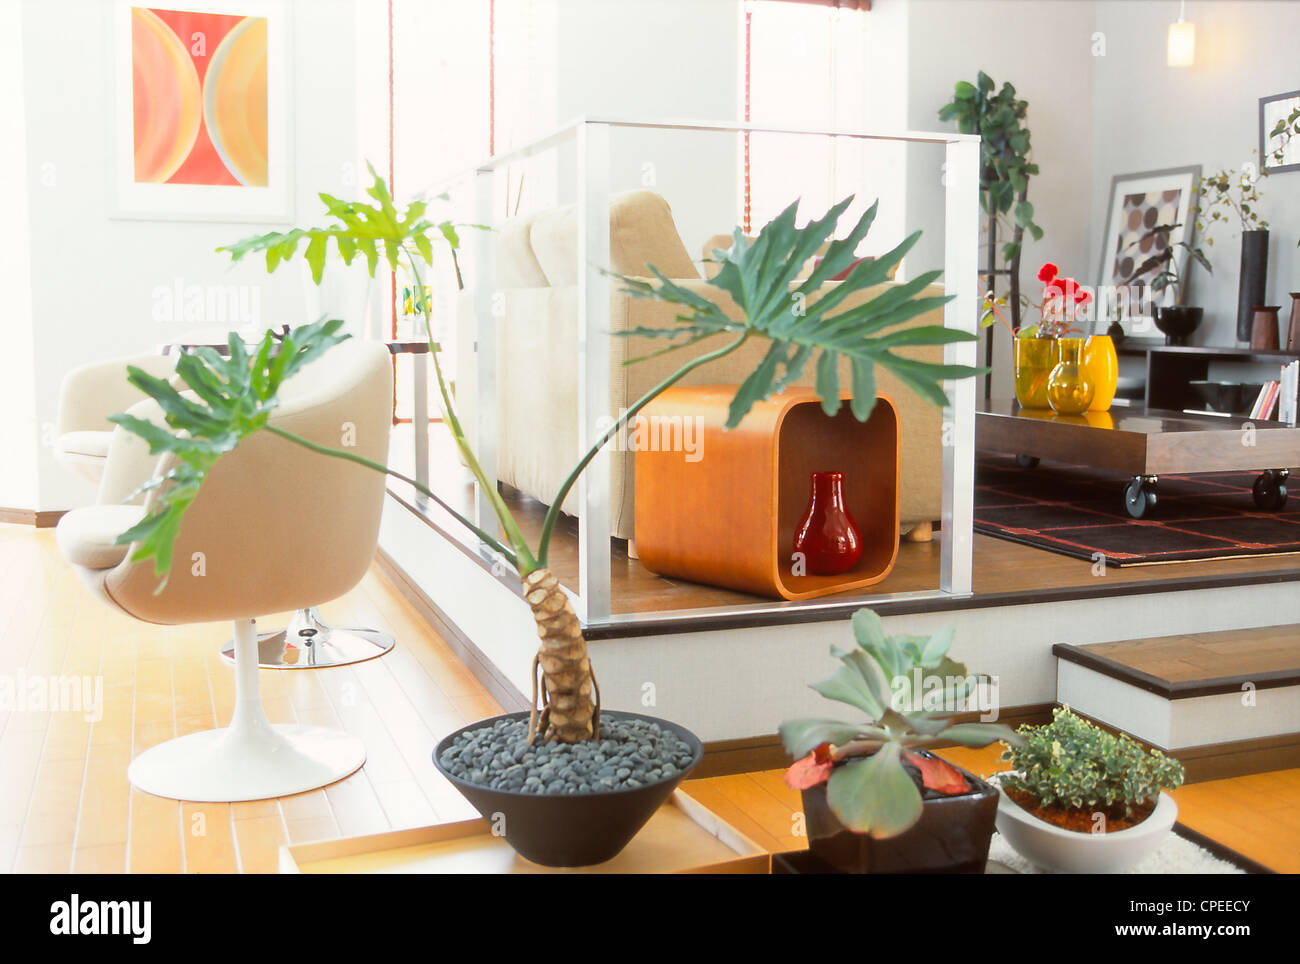 Casa moderna decorada con plantas en macetas Foto de stock